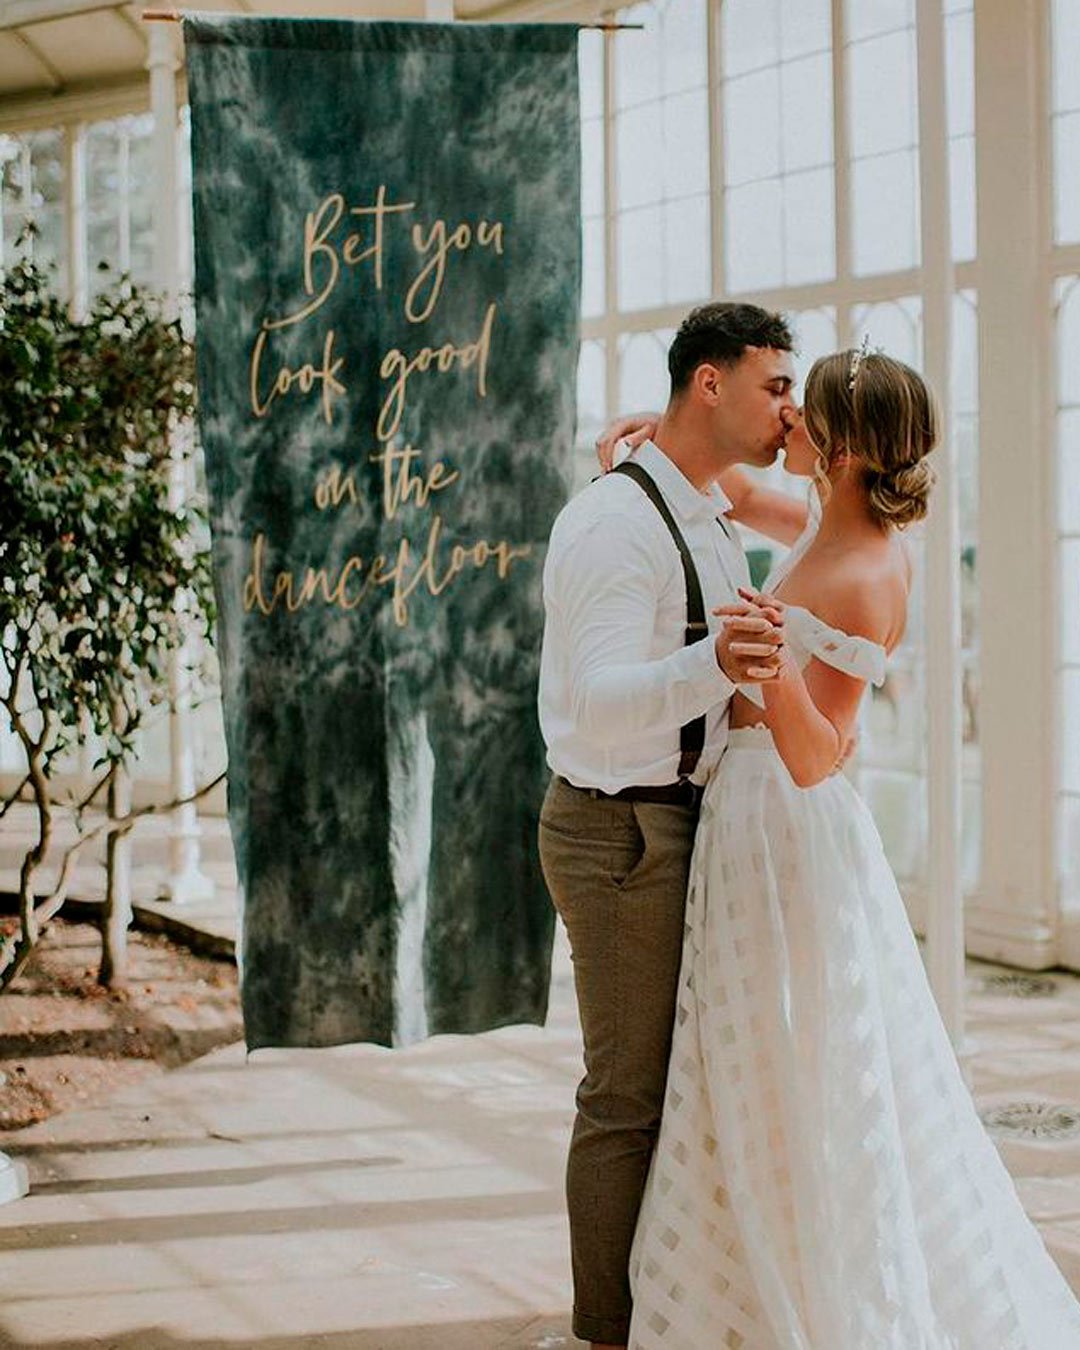 velvet wedding ideas backdrop lettering